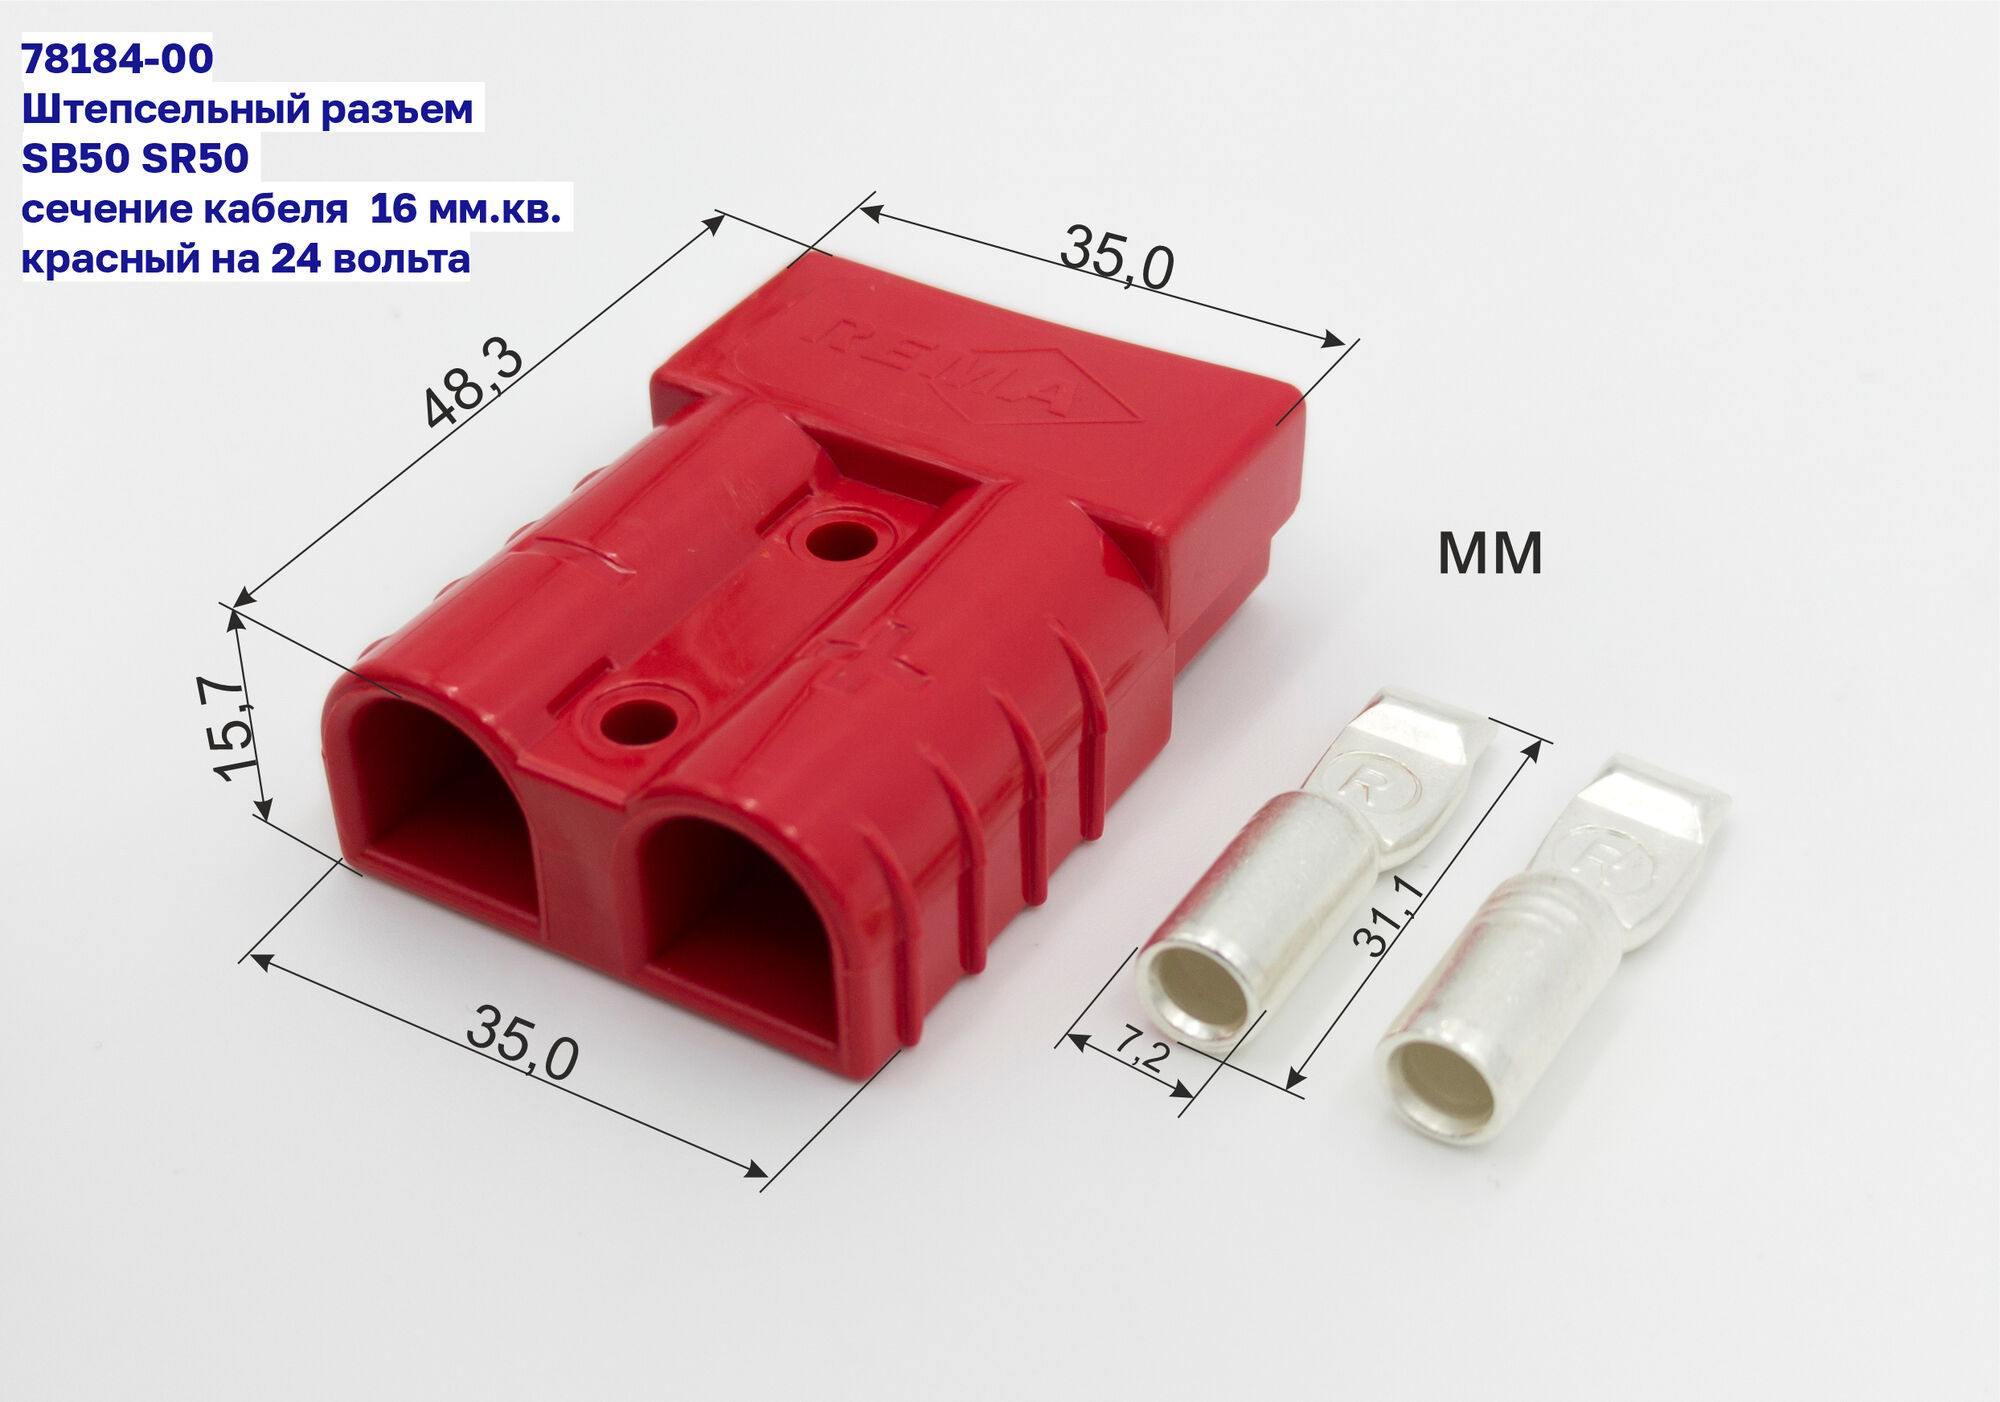 Штепсельный разъем REMA SB50 SR50 SY50 сечение кабеля 16 мм.кв. красный